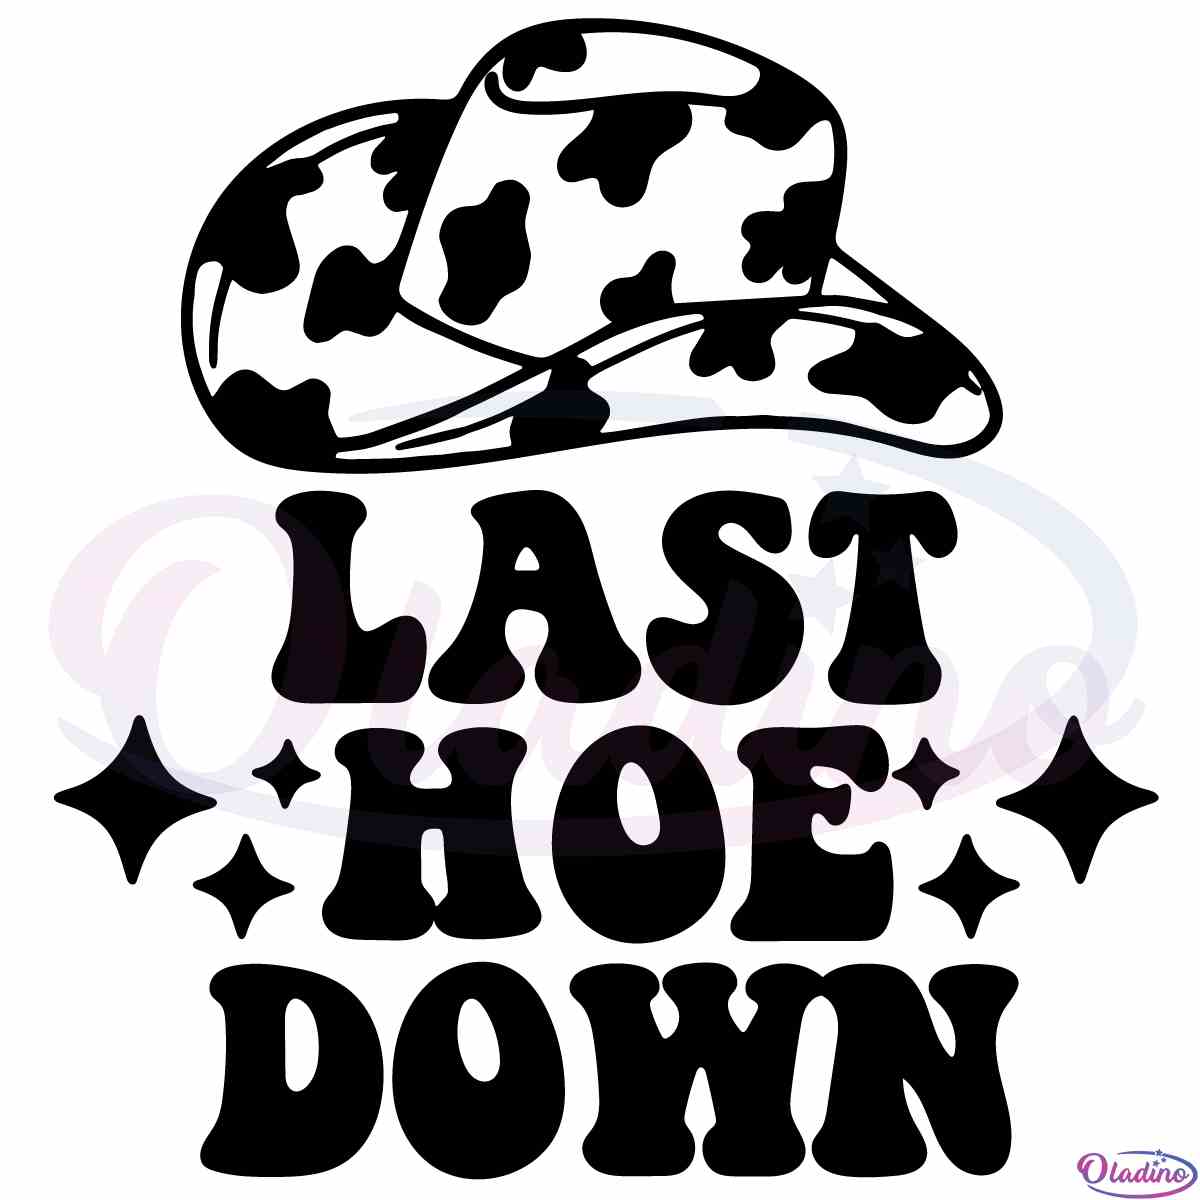 last-hoe-down-cowboy-hat-sublimation-svg-cricut-files